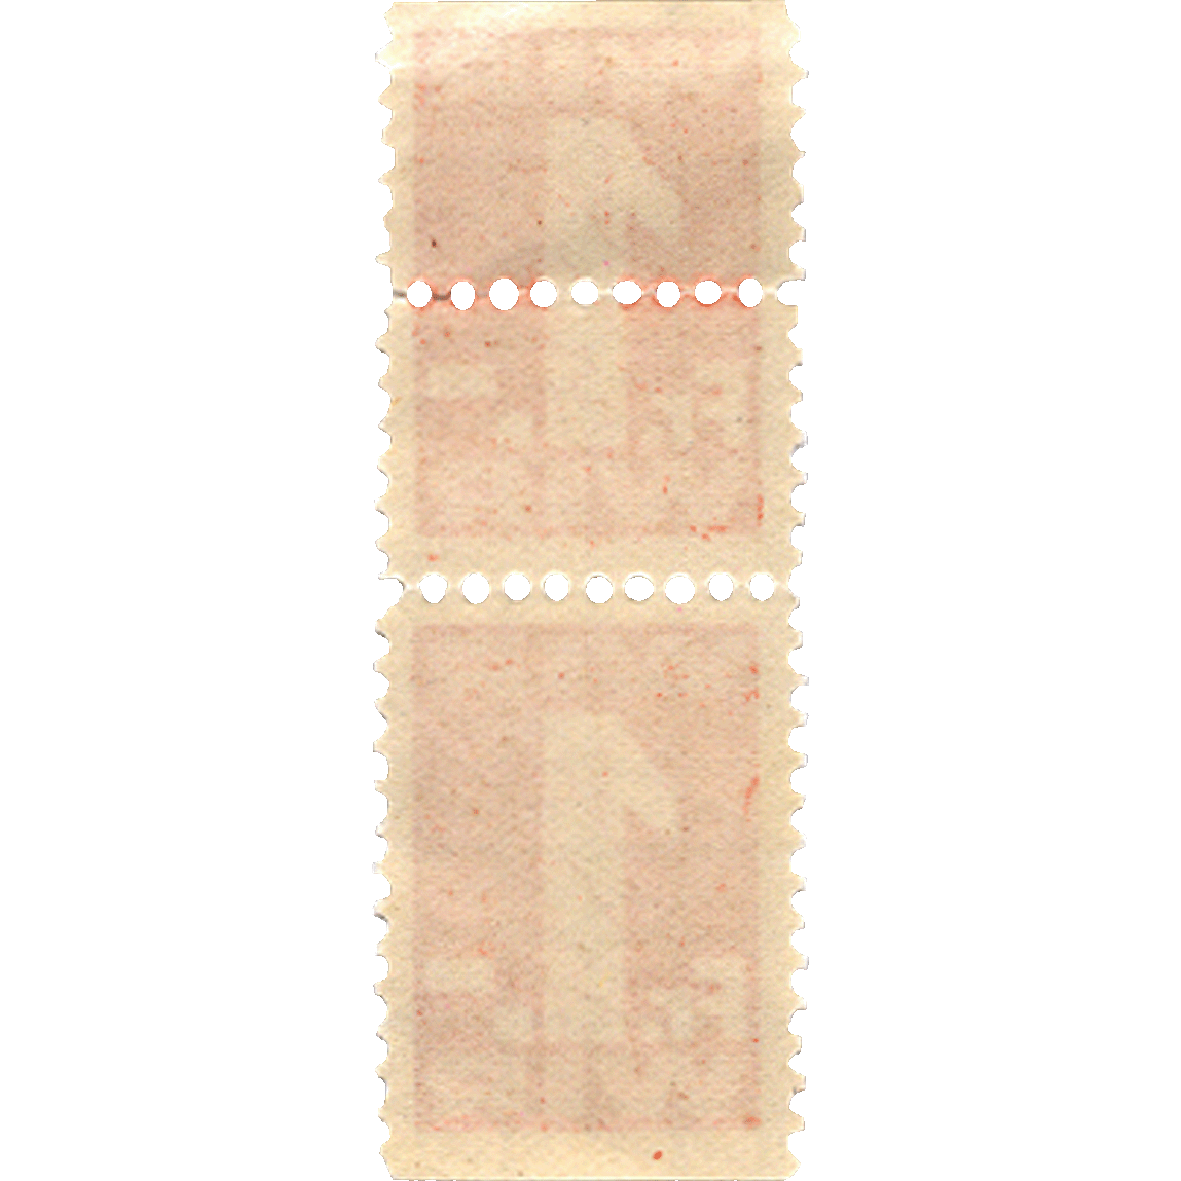 Swiss Confederation, Swiss Economic Circle (Wirtschaftsring-Genossenschaft), WIR Stamp worth 1 Franc (reverse)